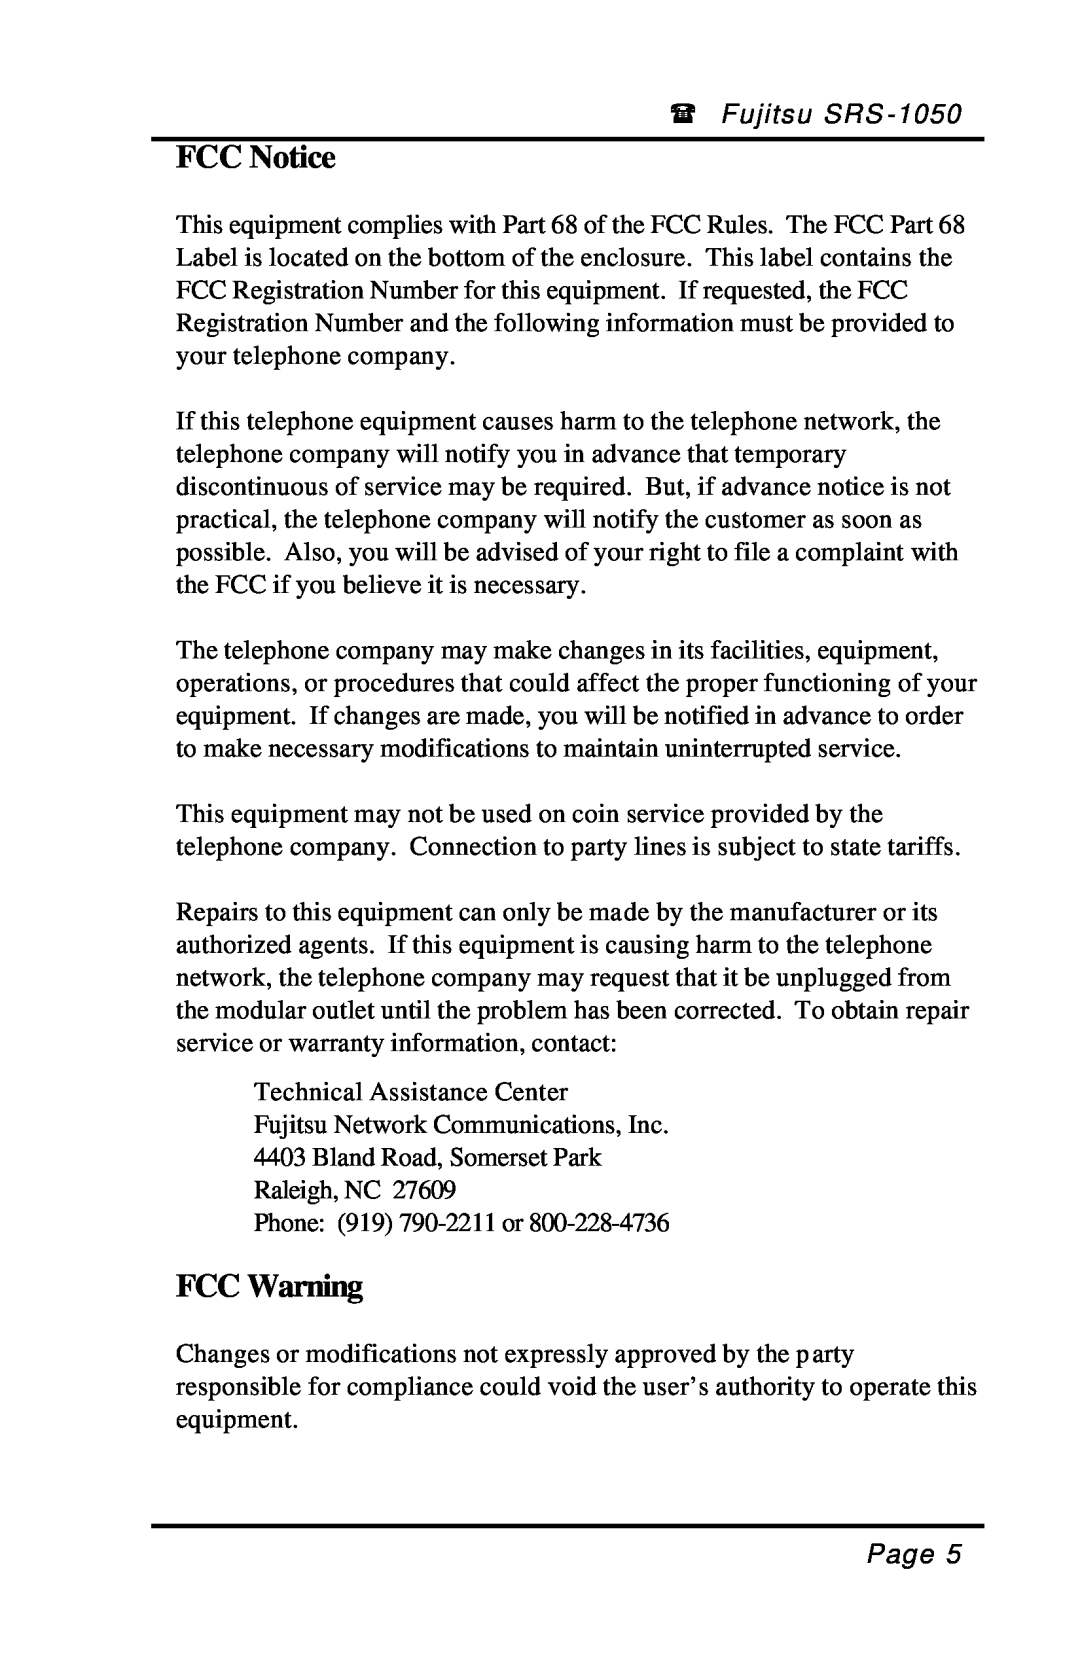 Fujitsu SRS-1050 manual FCC Notice, FCC Warning 